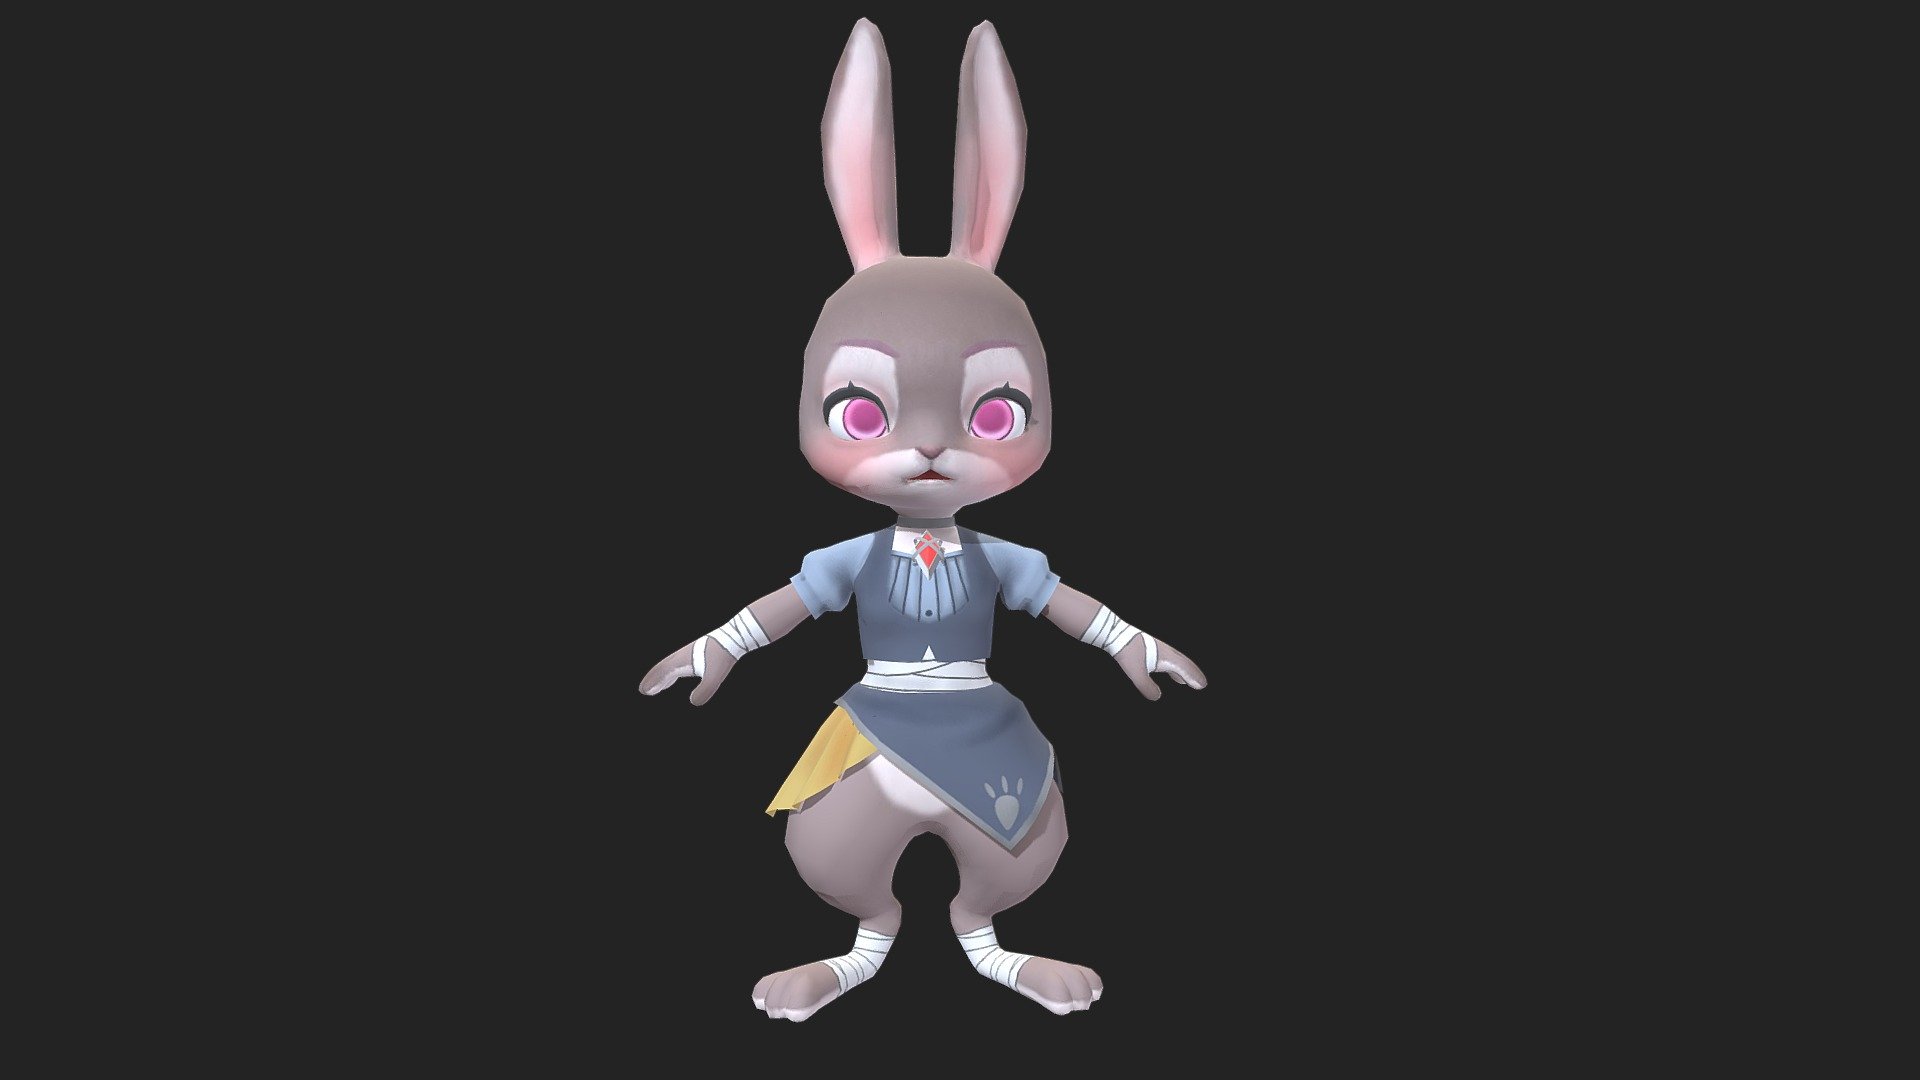 Animal Fighter_Rabbit - 3D model by maxbiba 3d model